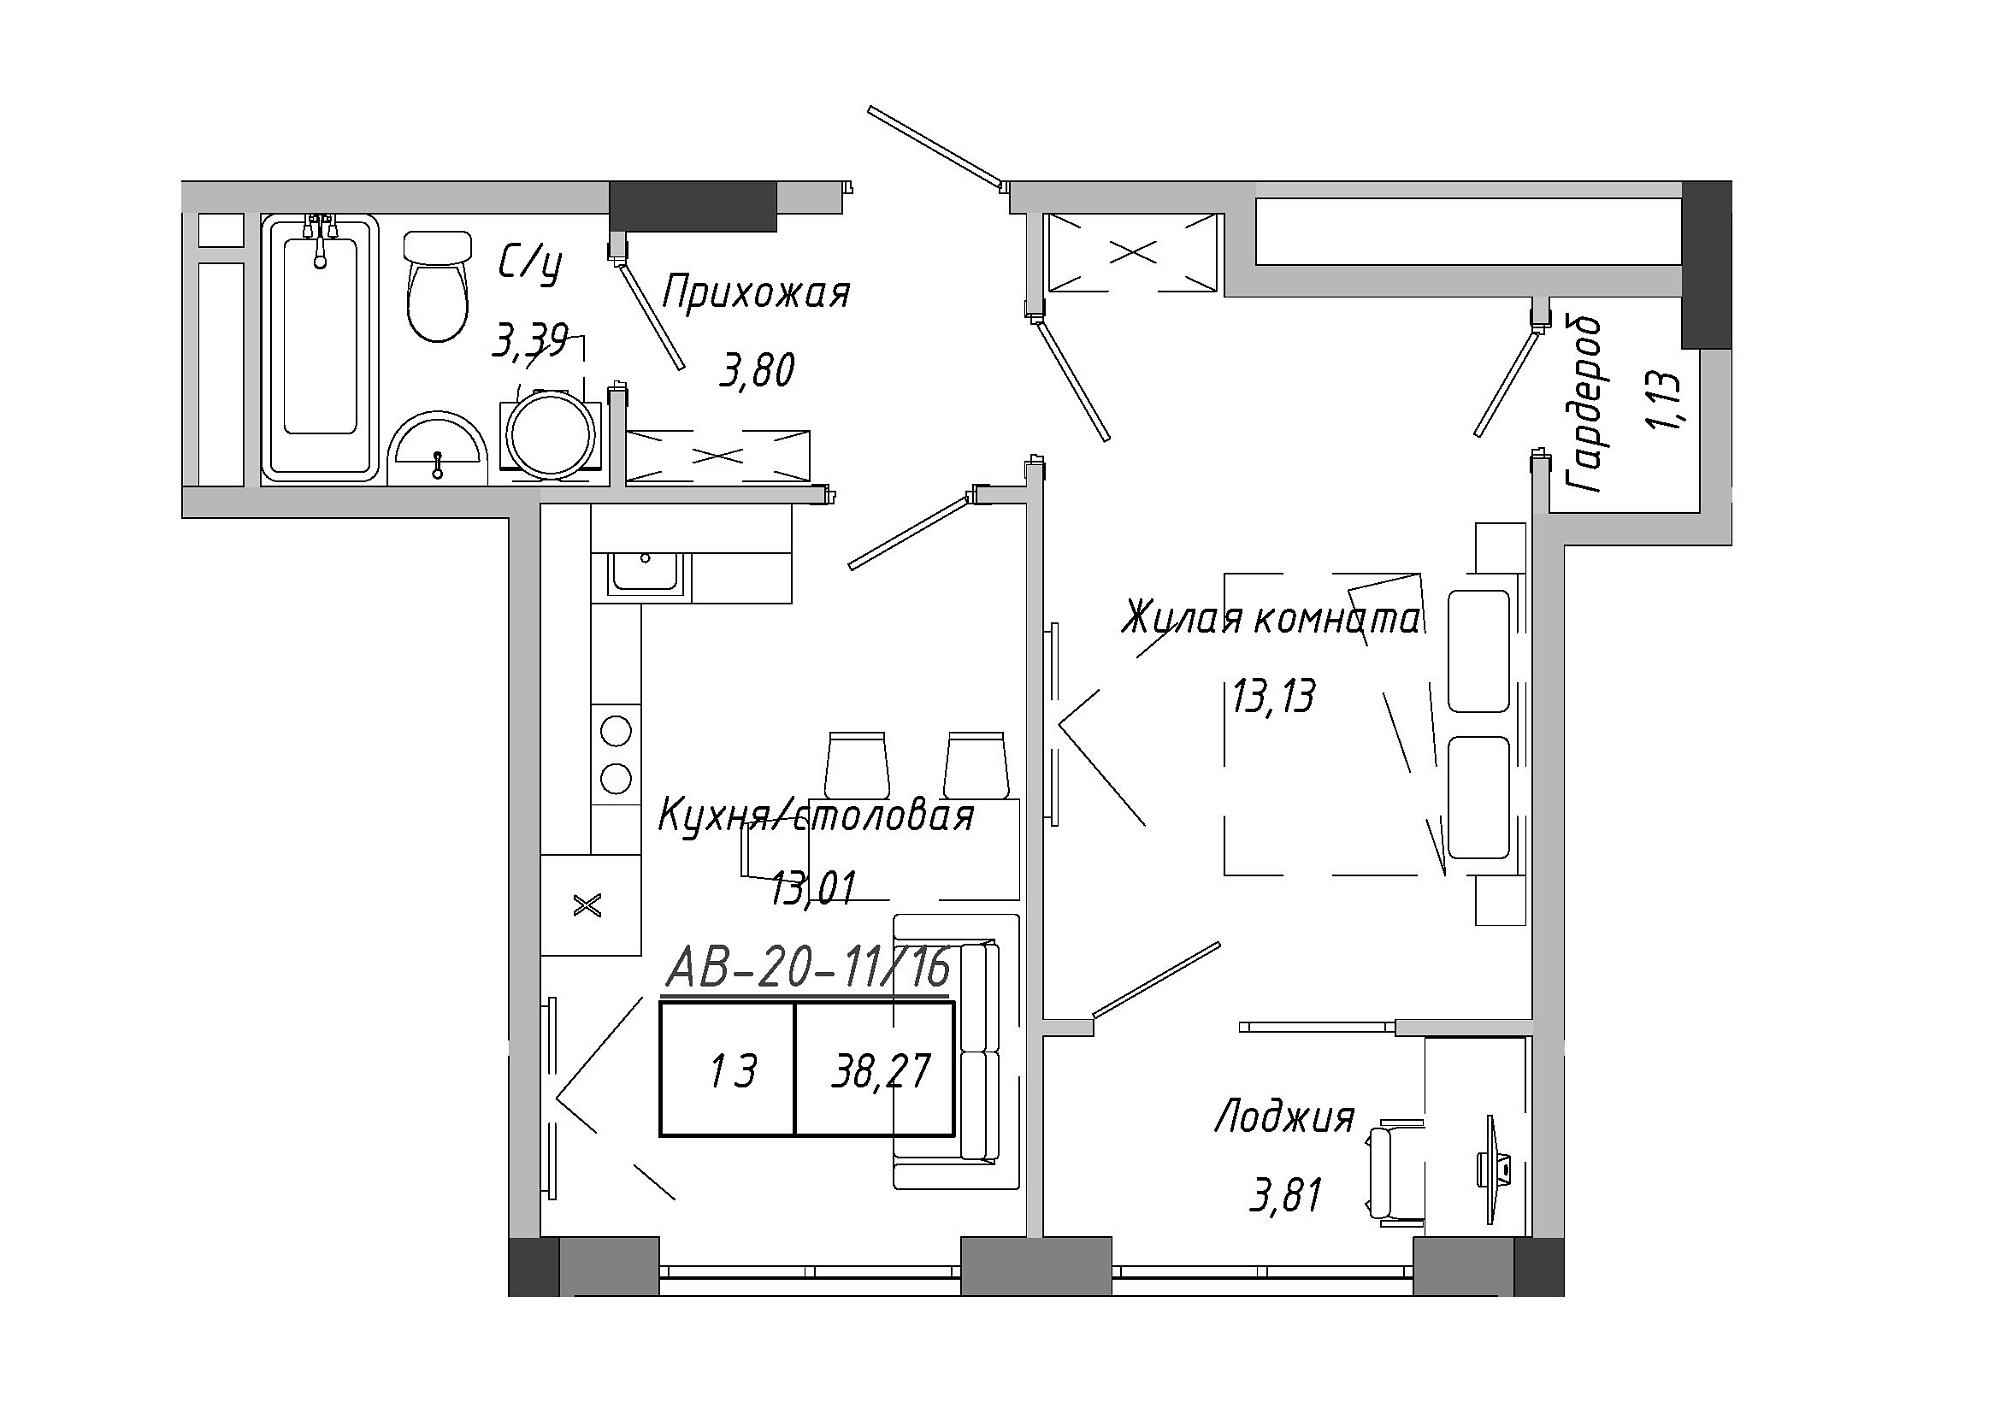 Планування 1-к квартира площею 38.79м2, AB-20-11/00016.